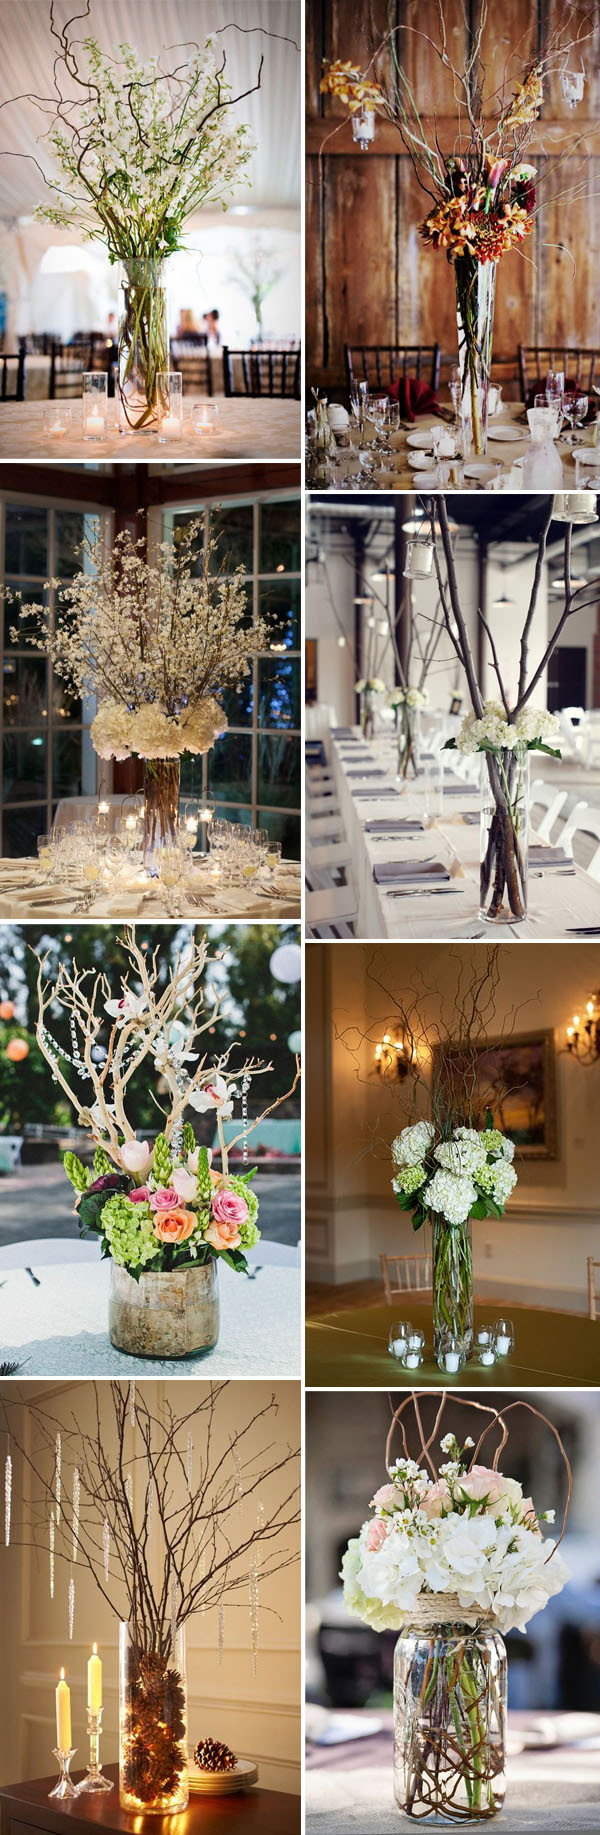 DIY Flower Centerpieces For Weddings
 28 Creative & Bud friendly DIY Wedding Decoration Ideas